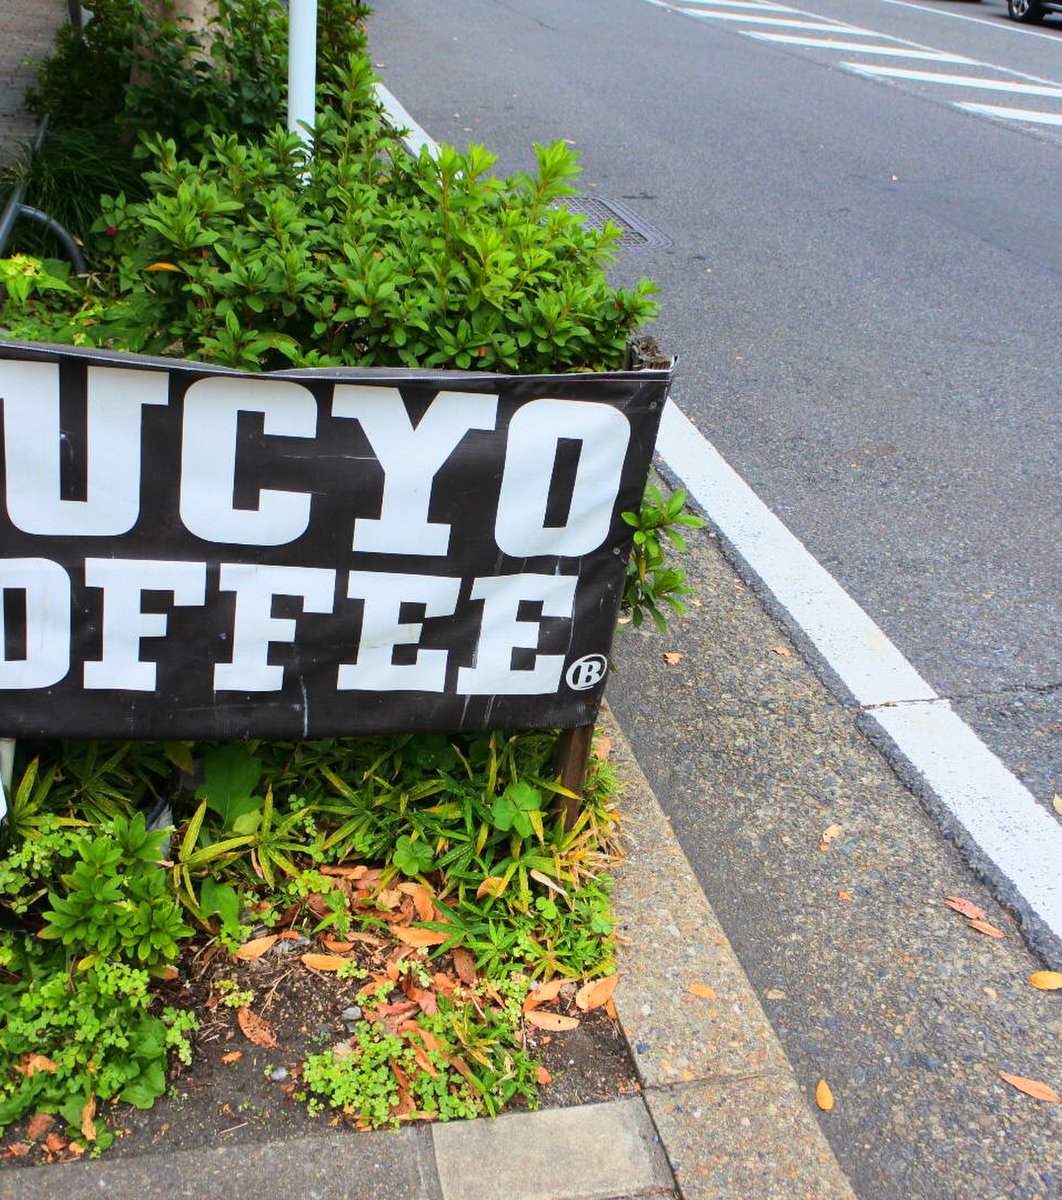 BUCYO Coffee KAKO